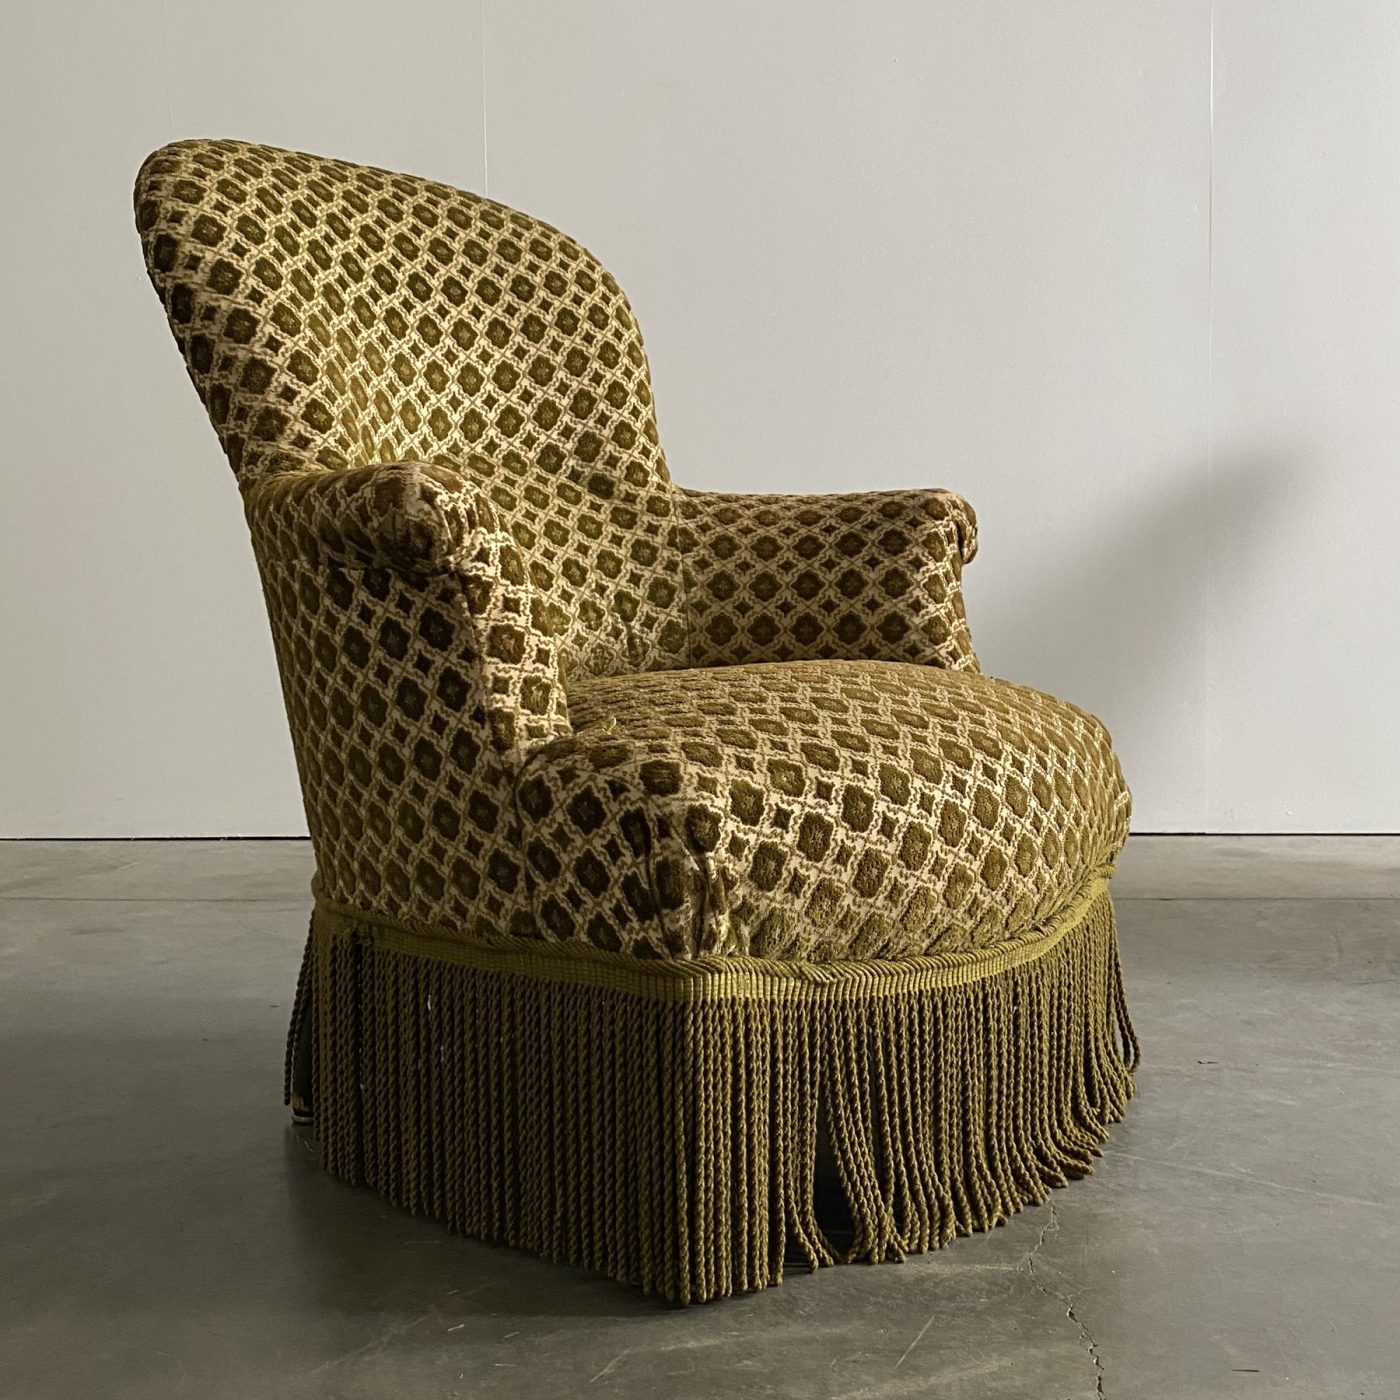 objet-vagabond-napoleon-armchairs0002